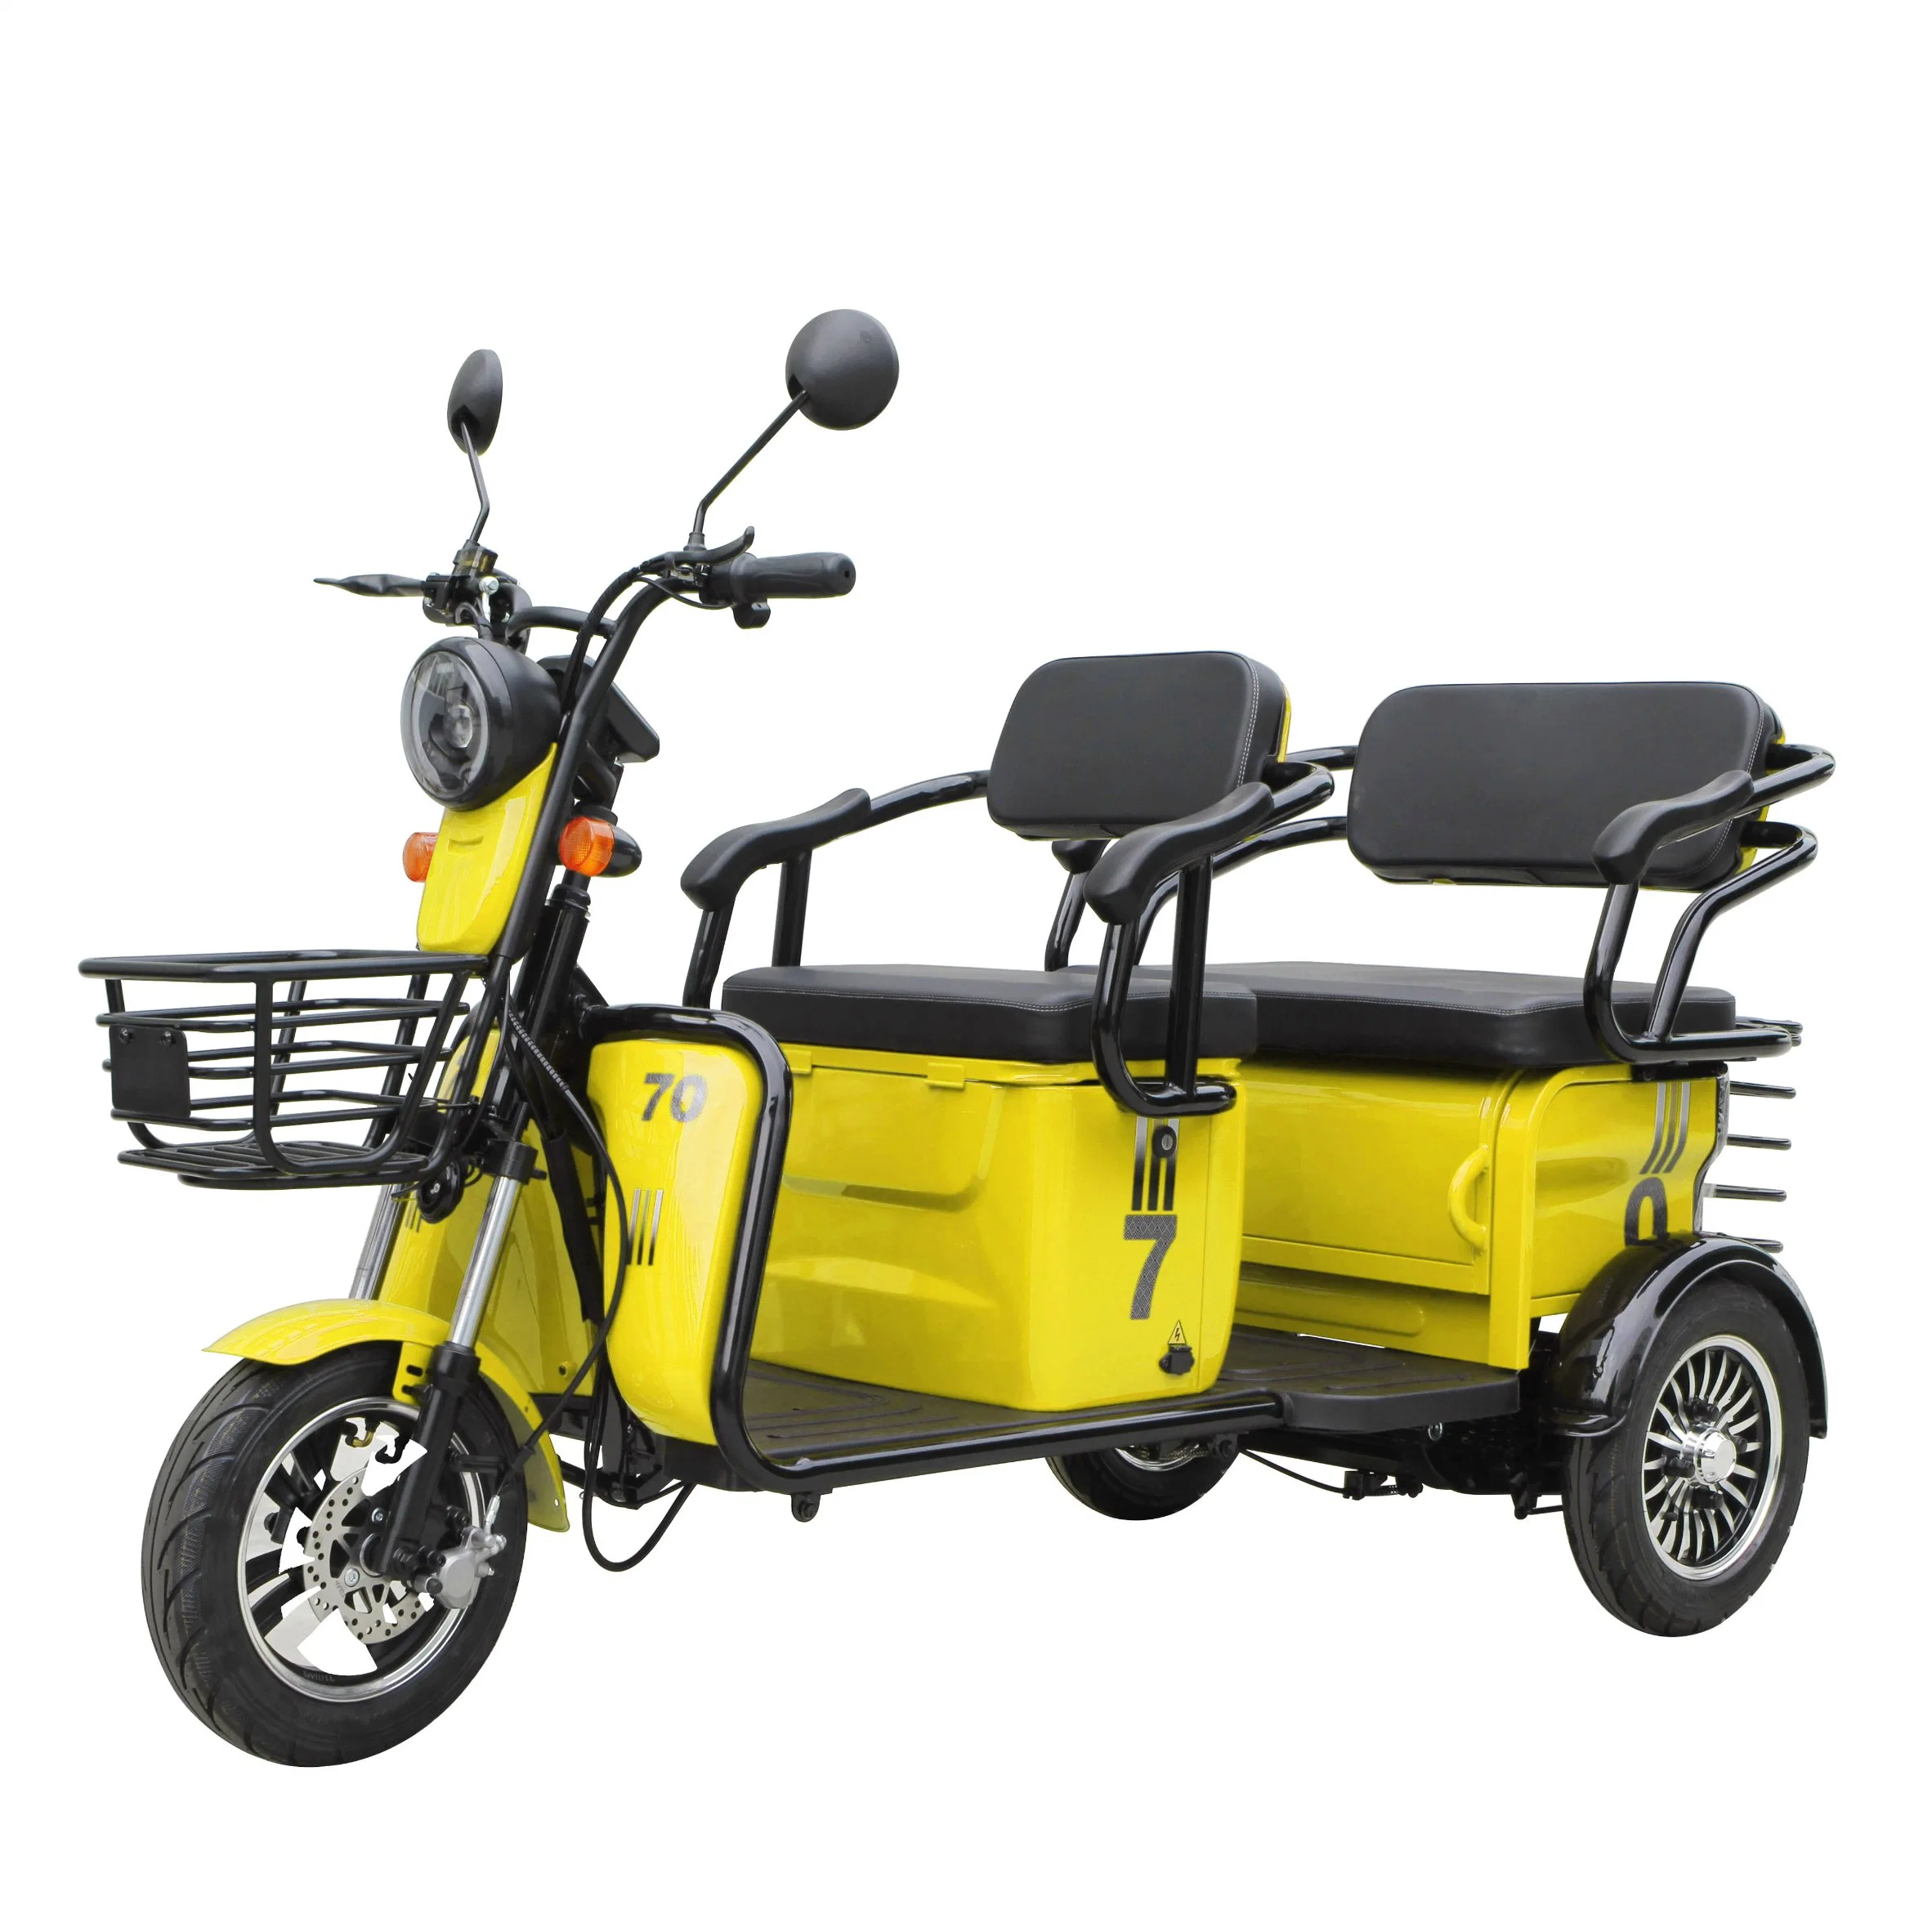 Scooter eléctrico de 3 ruedas moto de dos adultos mayores de bicicletas triciclo eléctrico